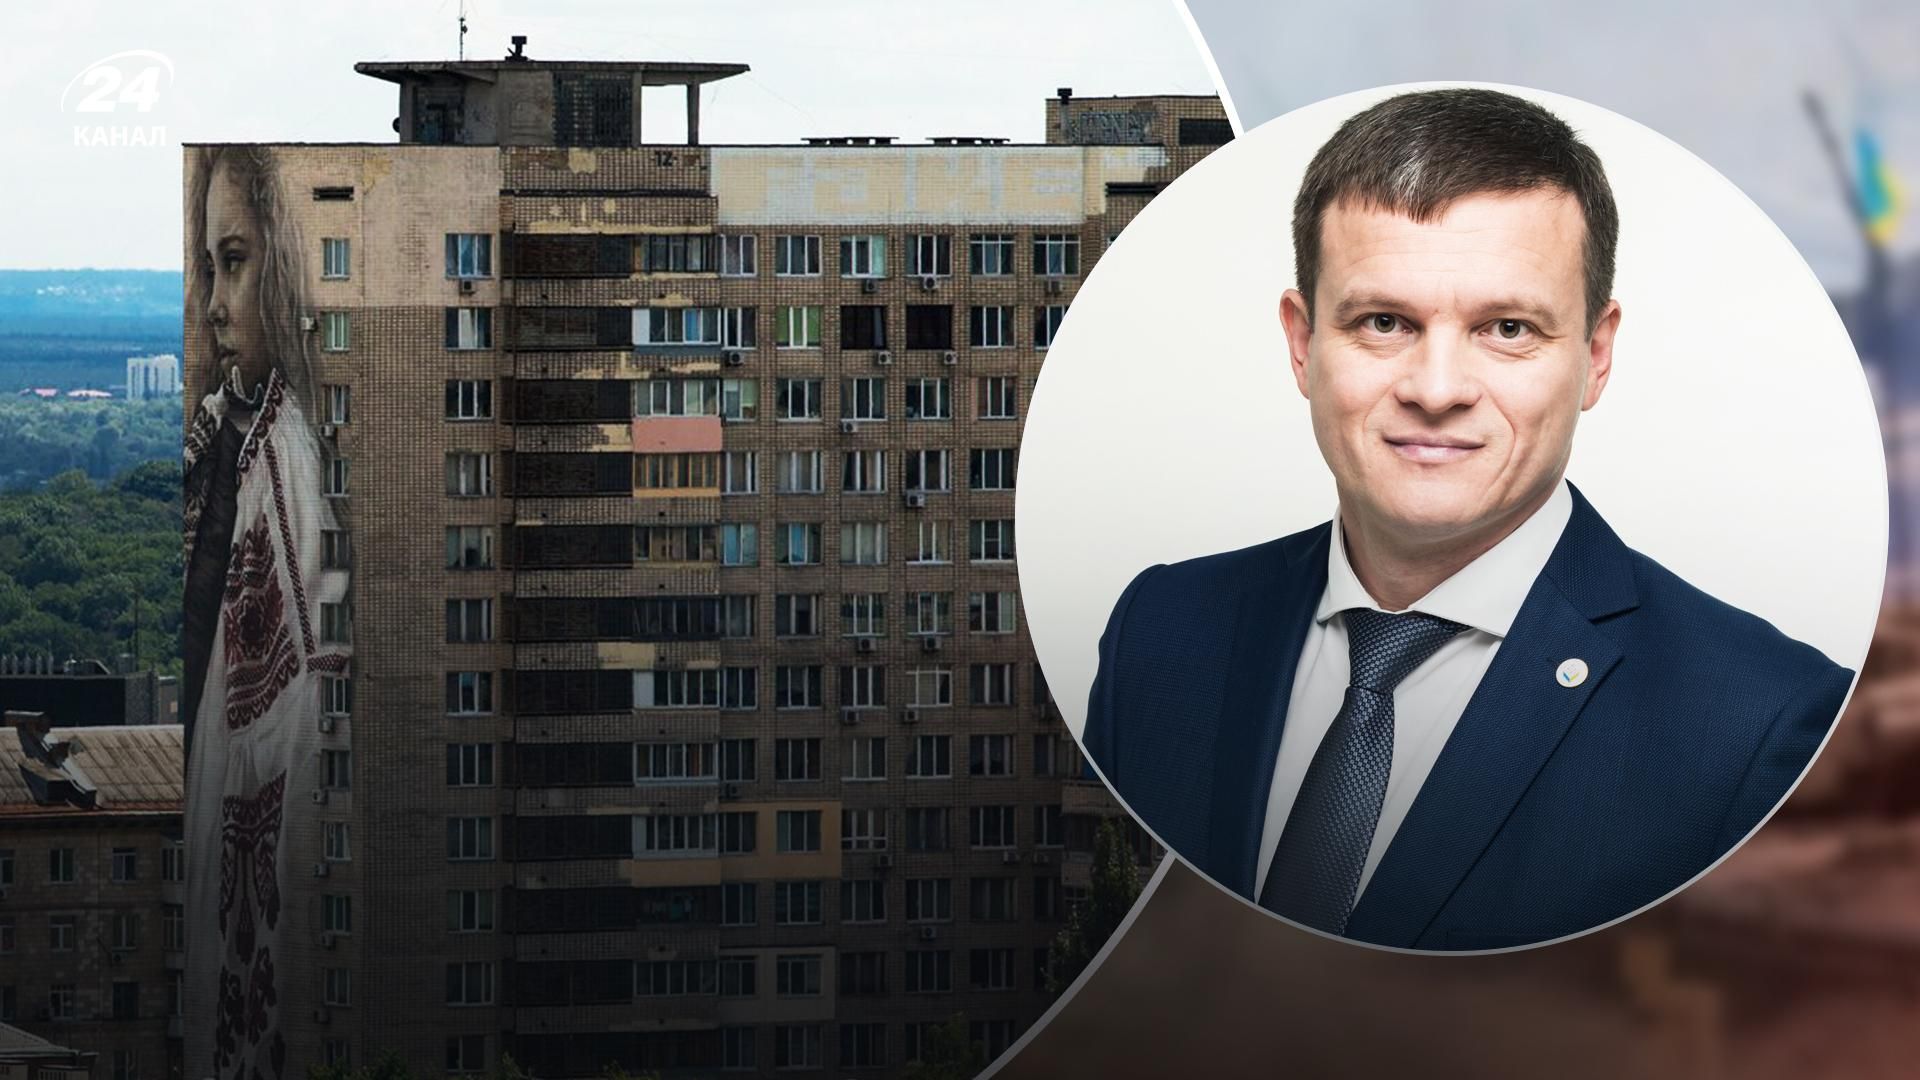 Ринок формують покупці: експерт про зміни цін на українську нерухомість 